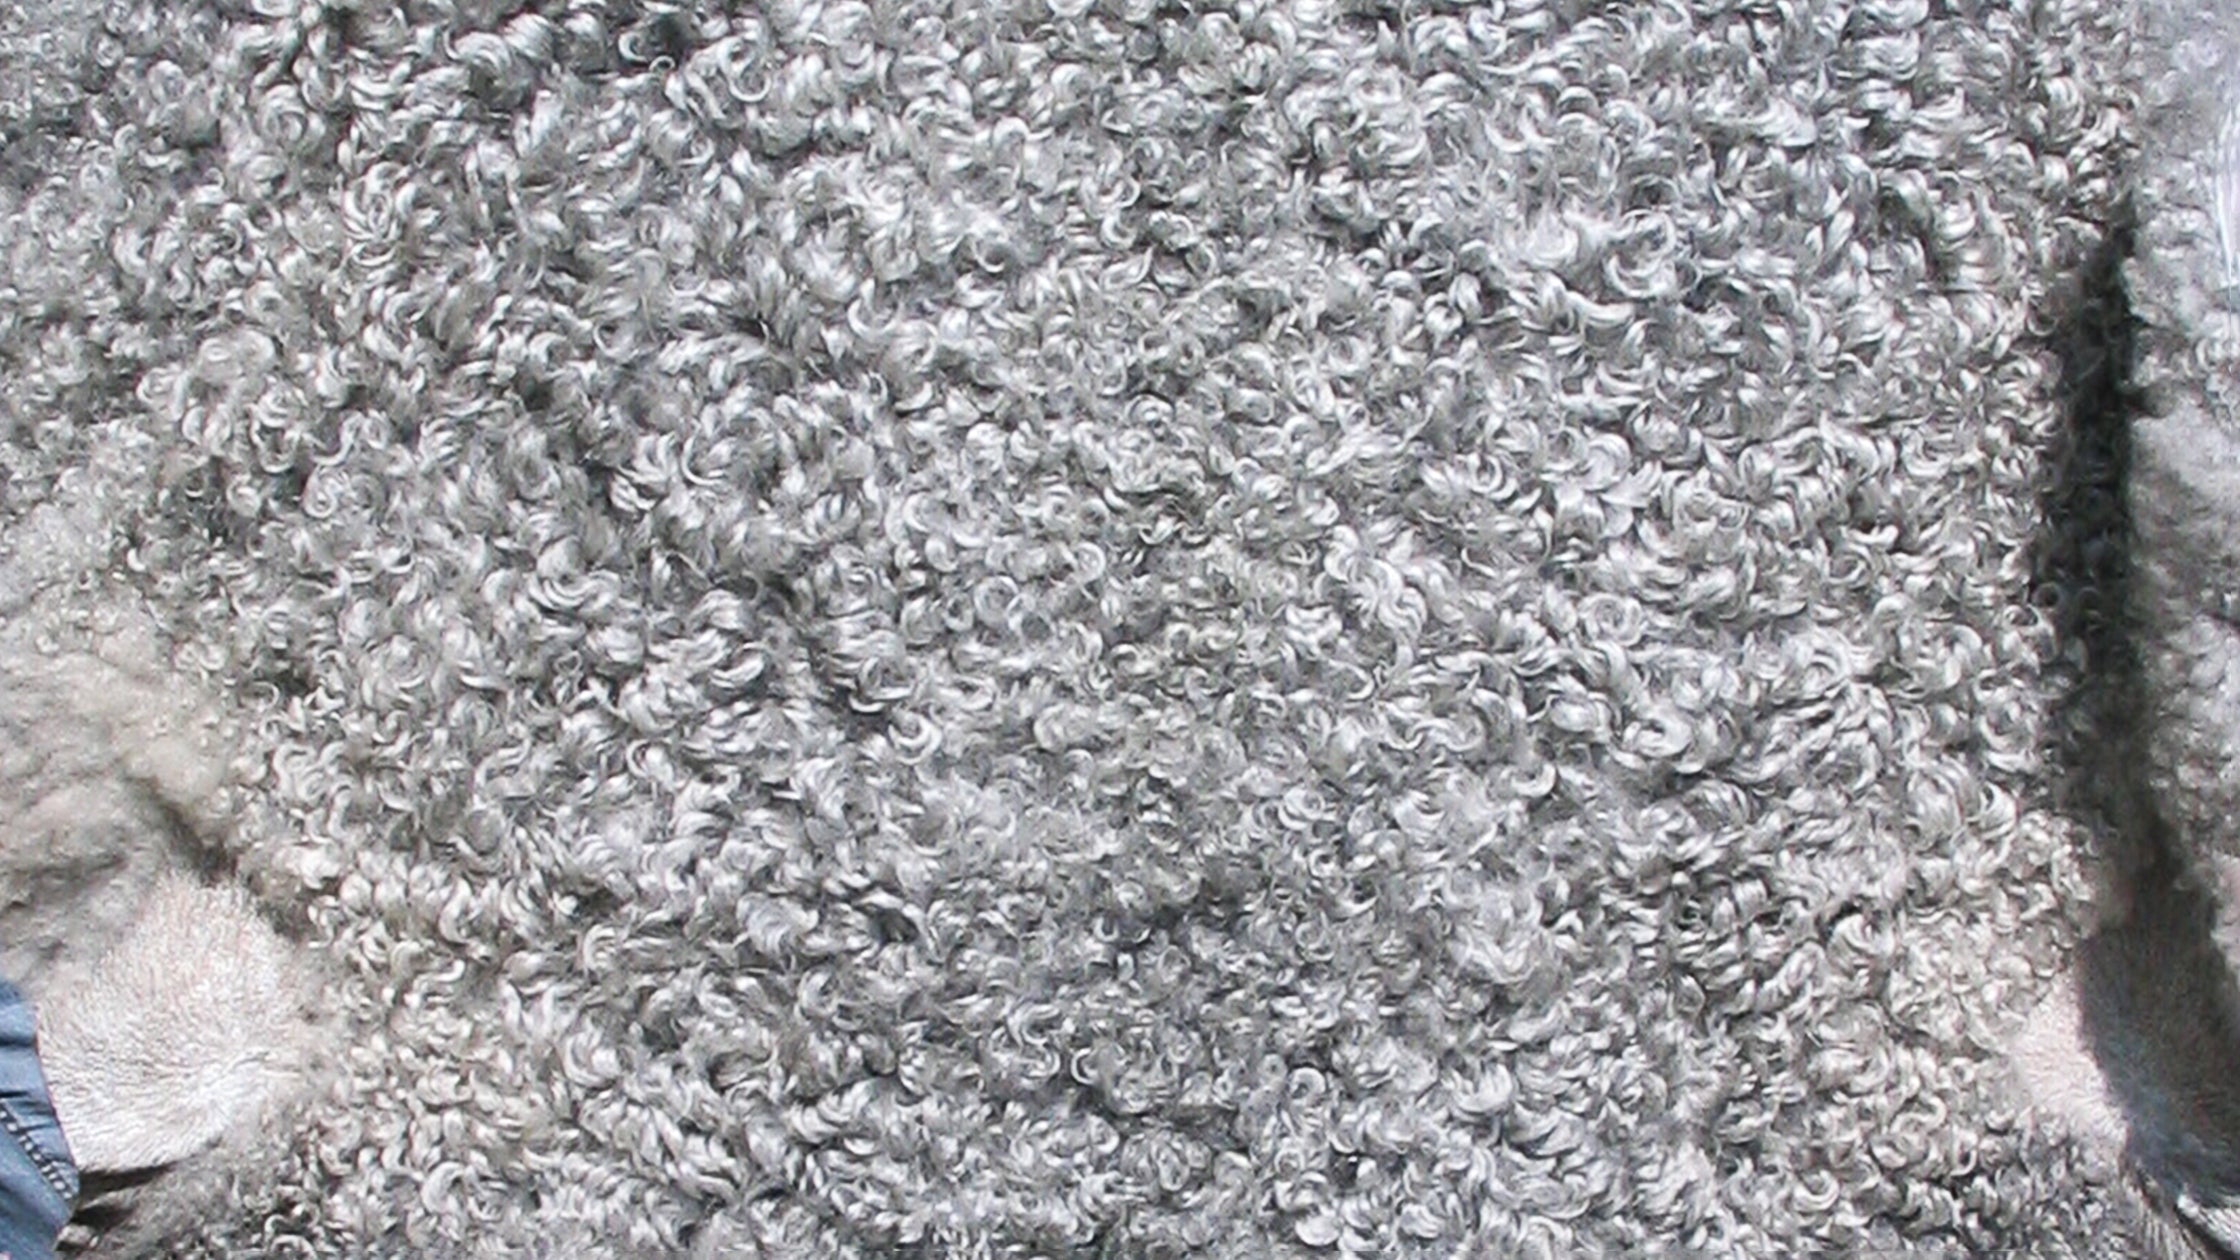 Close-up of Gotland Sheep pelt